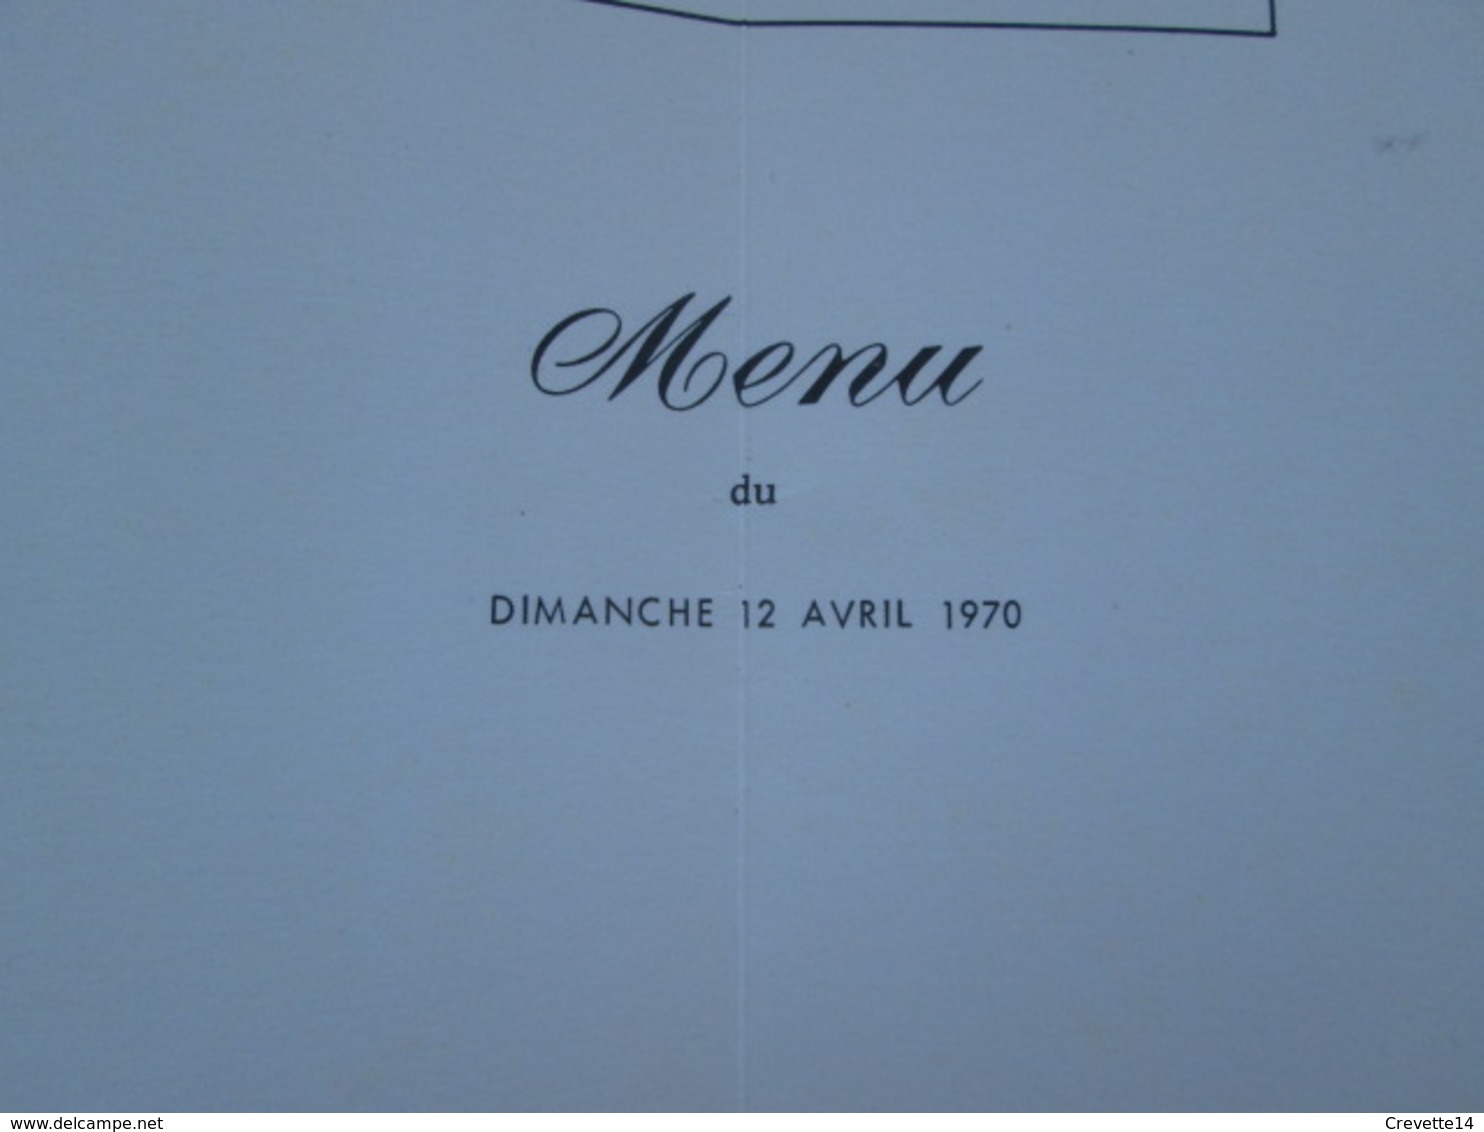 Menu Paquebot France 12 Avril 1970, Dessin De Par J. A. Mercier, Croisière Ottomane 24x 34cm Vu à 15€ Sur I-B !!!! - Menus